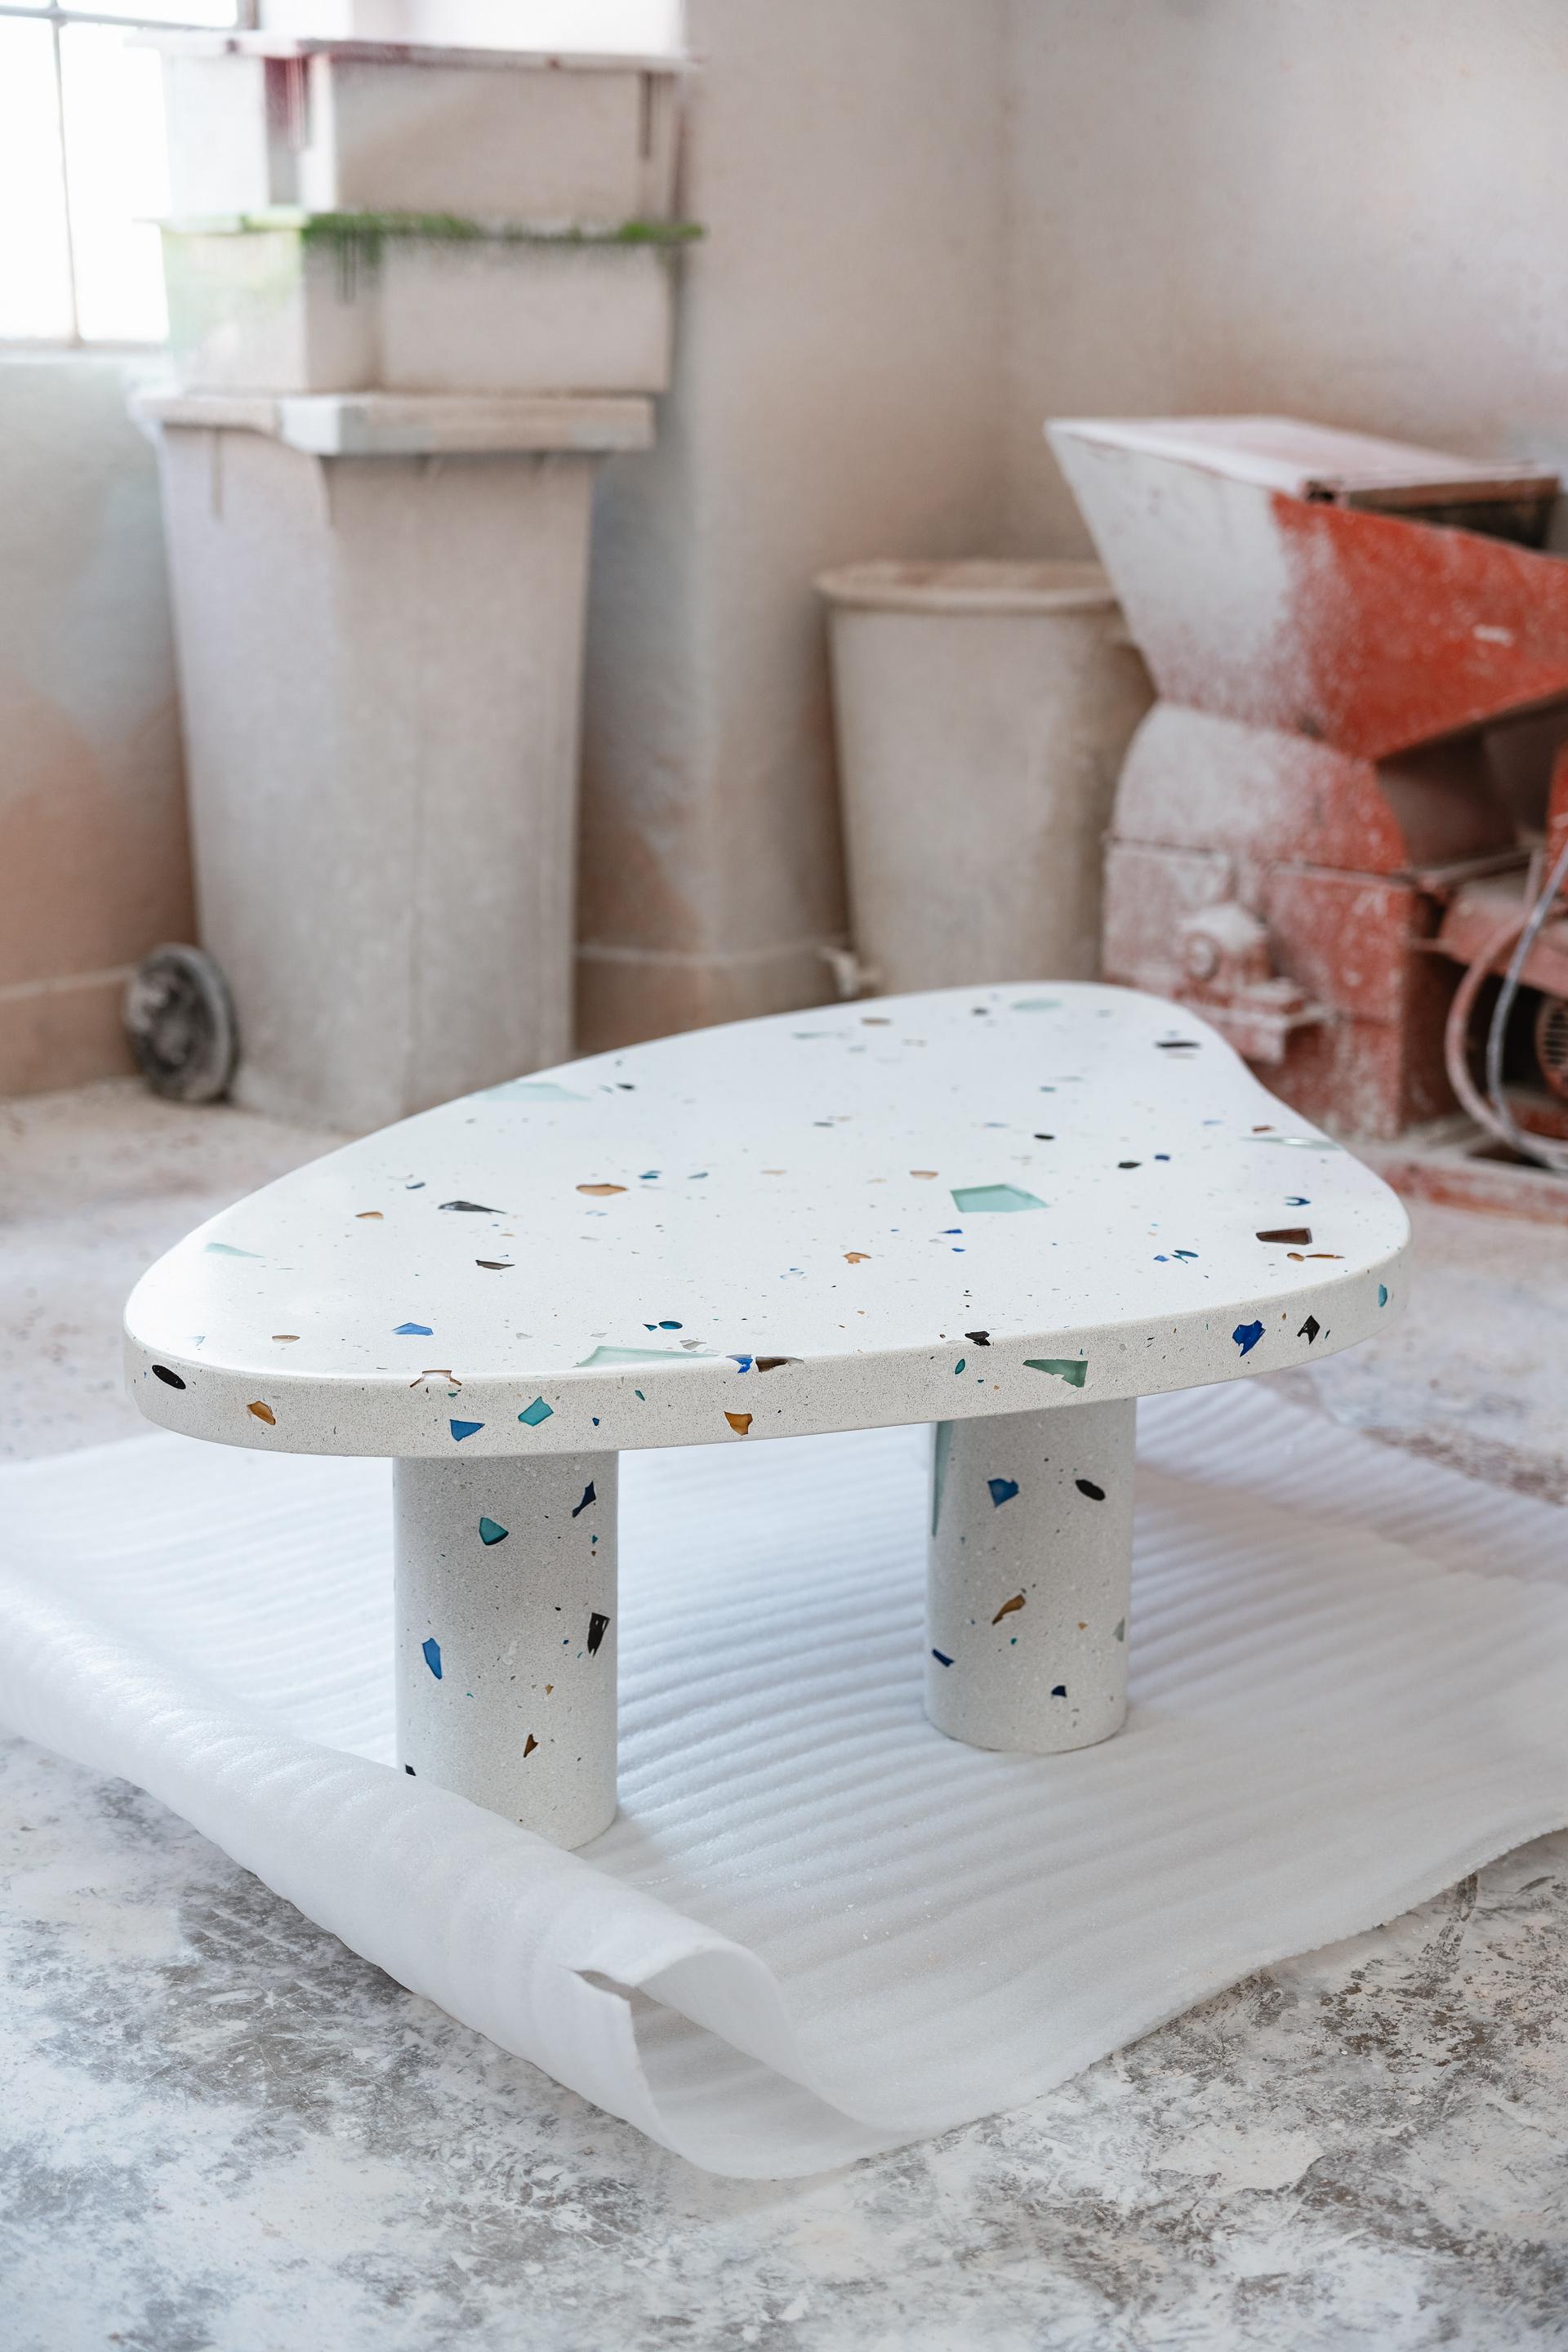 Der Mono Coffee Grande Table ist Teil der Collection'S MONOMORFO. Die Terrazzokomposition besteht aus übrig gebliebenen Glaskristallen aus einer Glaskristallfabrik in Minas Gerais, Brasilien. Diese MATERIAL-Reste tragen dazu bei, dass für jeden